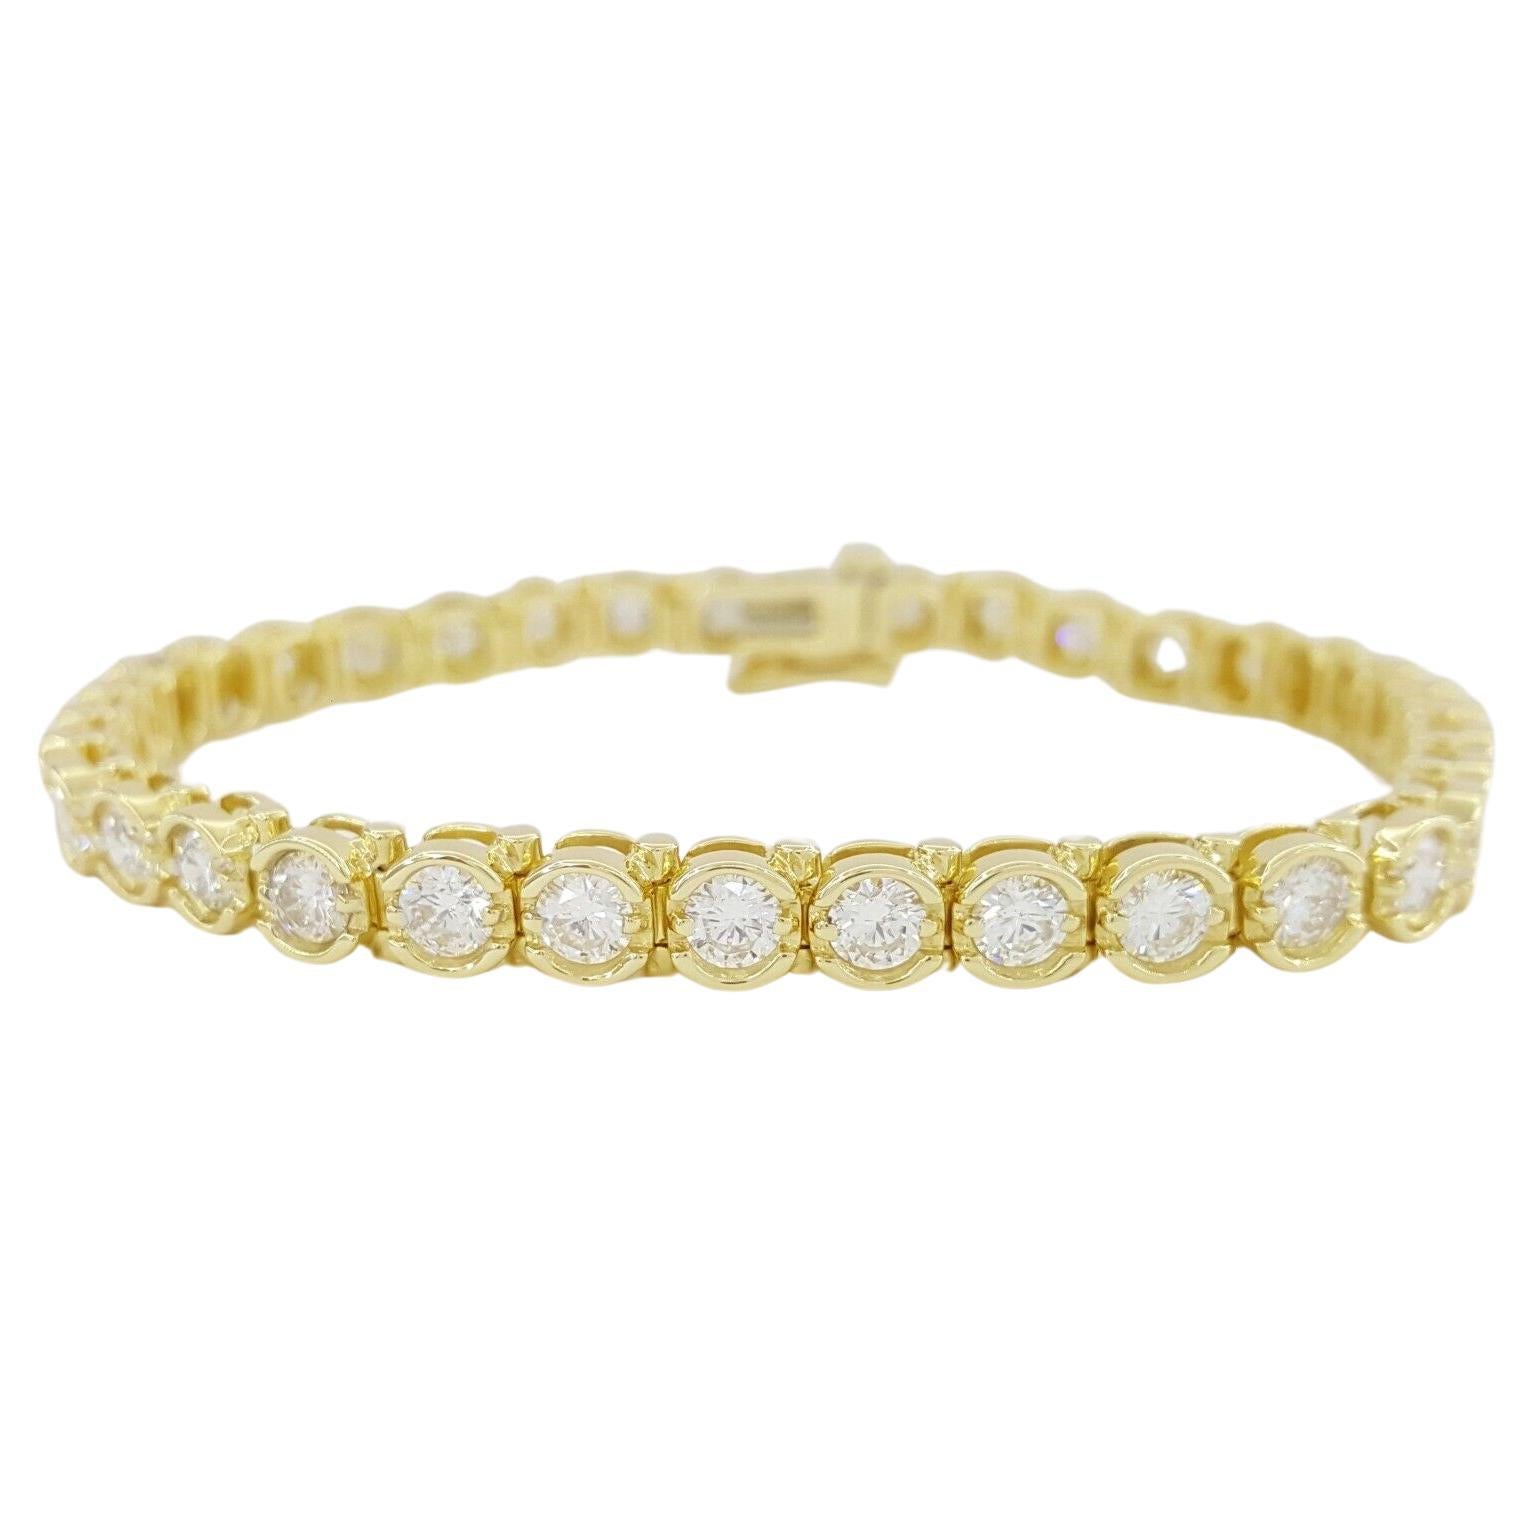 Bracelet de tennis en or jaune 18 carats avec diamants ronds de 5,70 carats et taille brillante